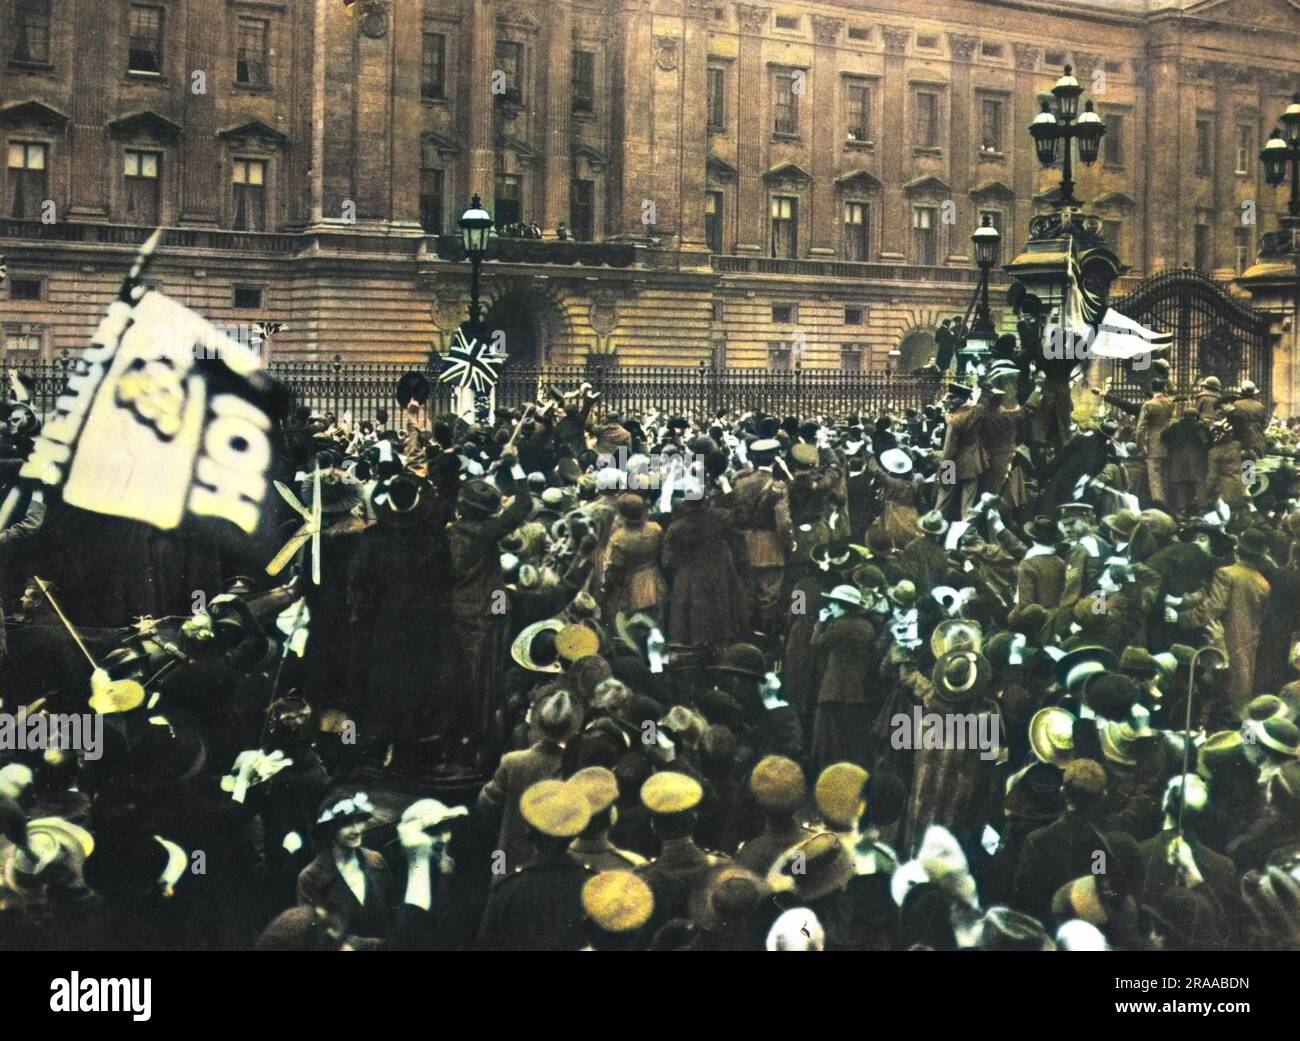 La foule de la journée d'armistice devant Buckingham Palace, Londres, le 11th novembre 1918, applaudit les Royals sur le balcon. Date : 11th novembre 1918 Banque D'Images